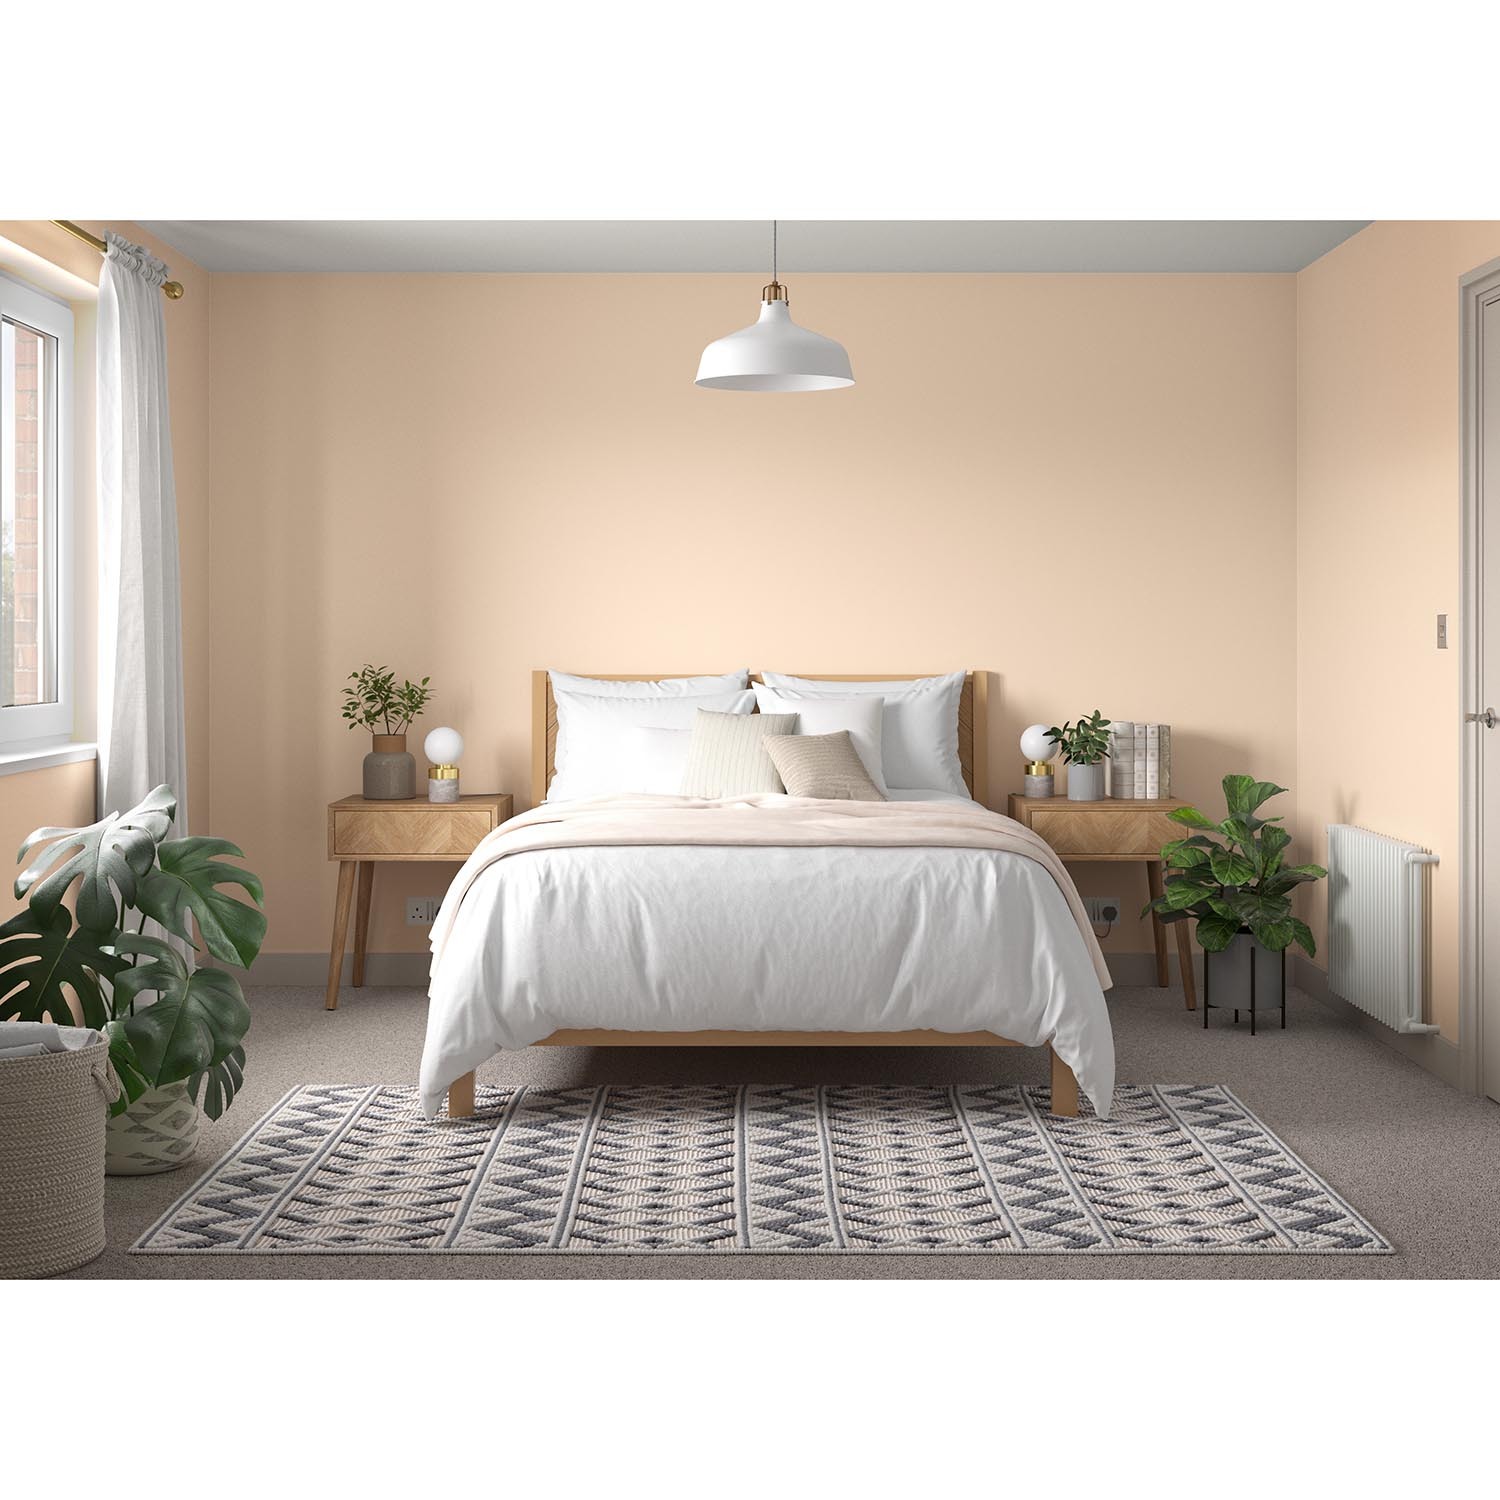 Dulux Walls & Ceilings Soft Peach Matt Emulsion Paint 2.5L Image 4